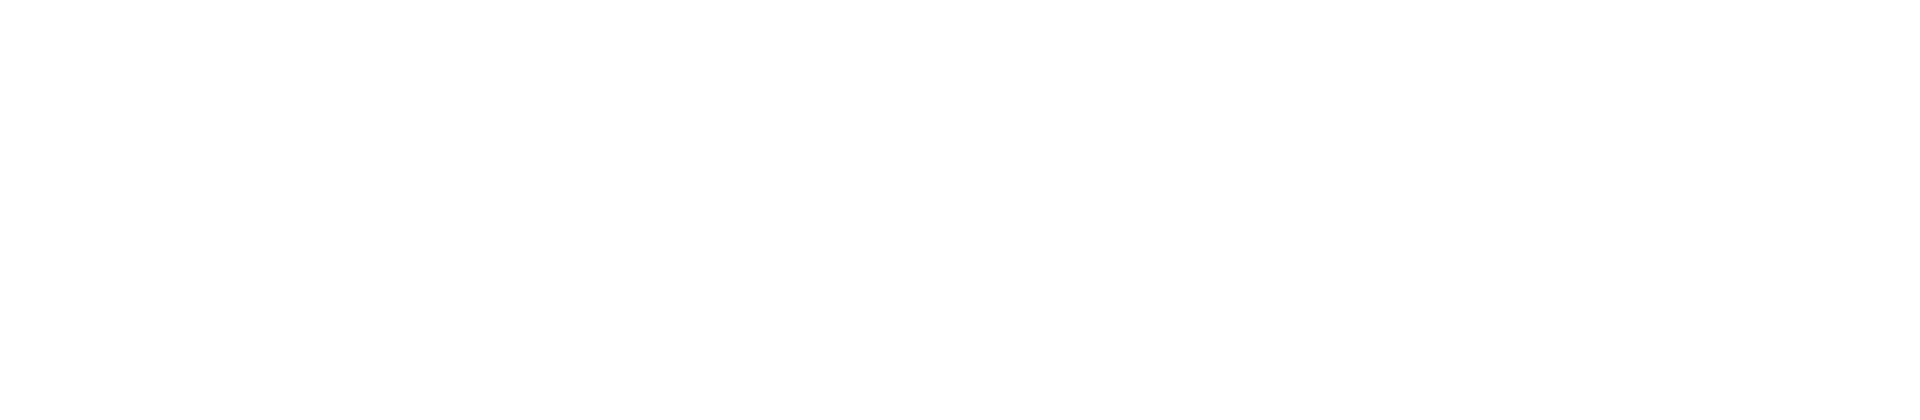 logo from brand EV